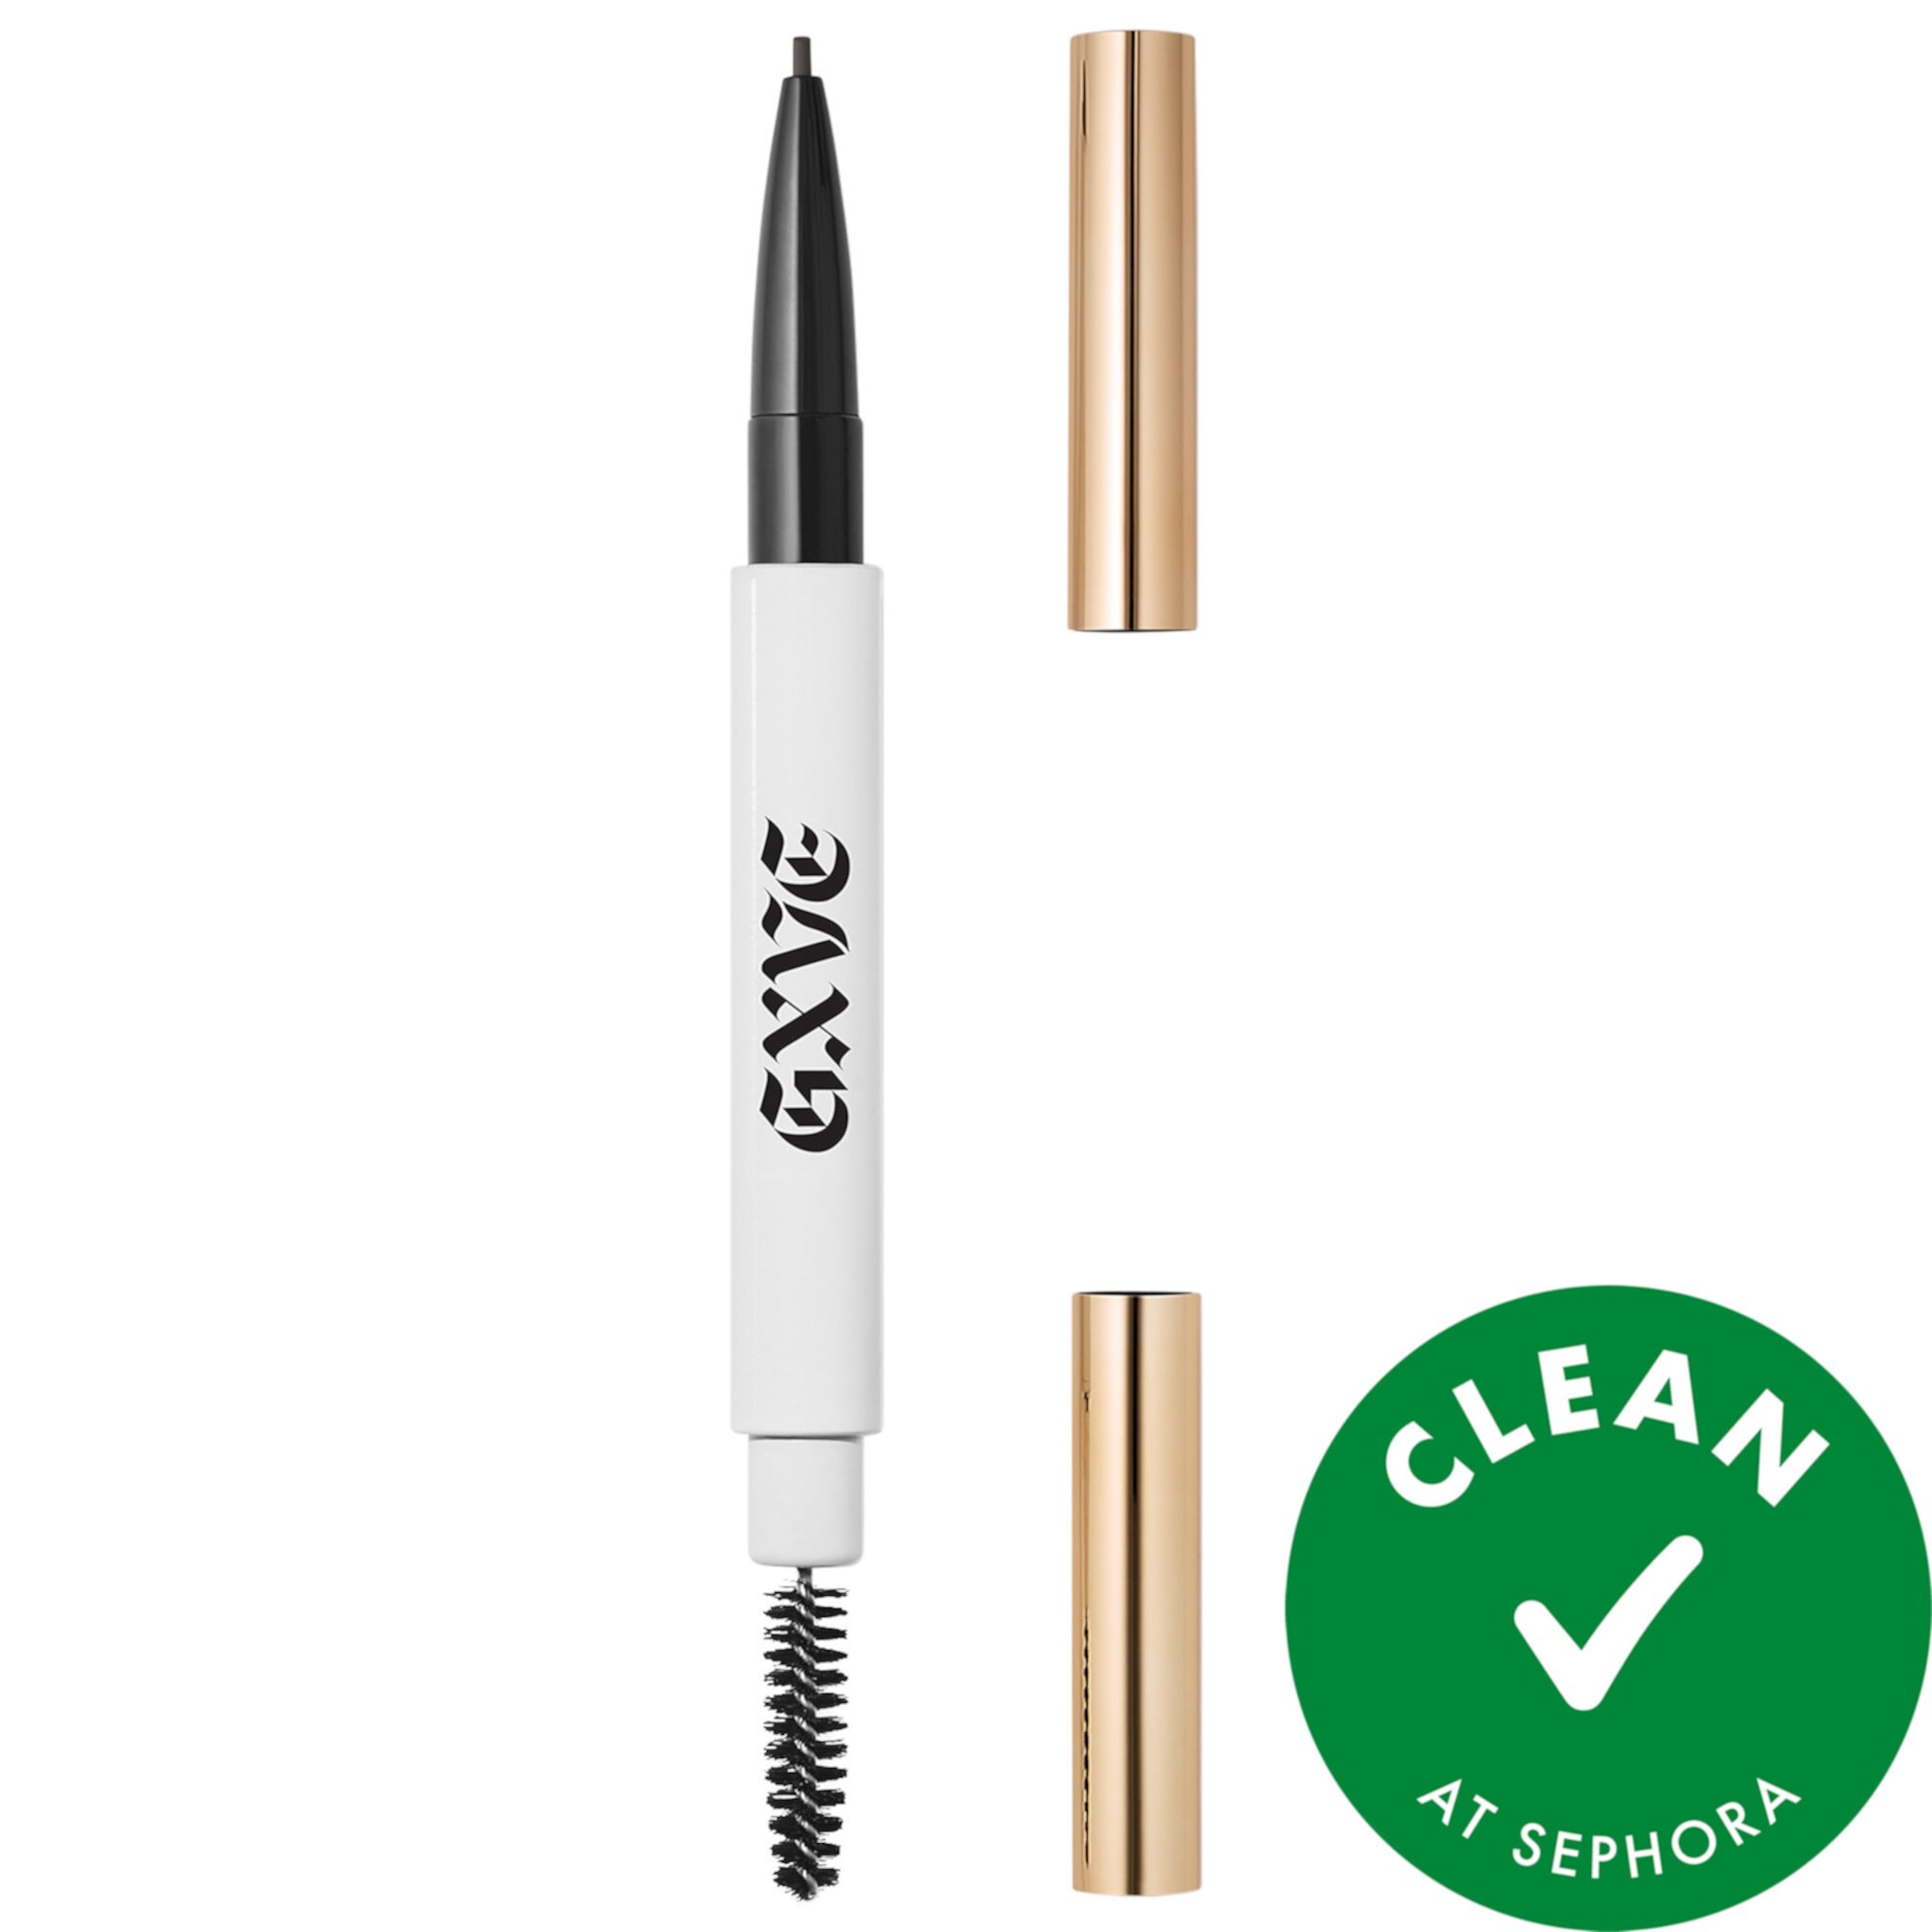 Hella On Point Clean Ультратонкий карандаш для бровей GXVE BY GWEN STEFANI